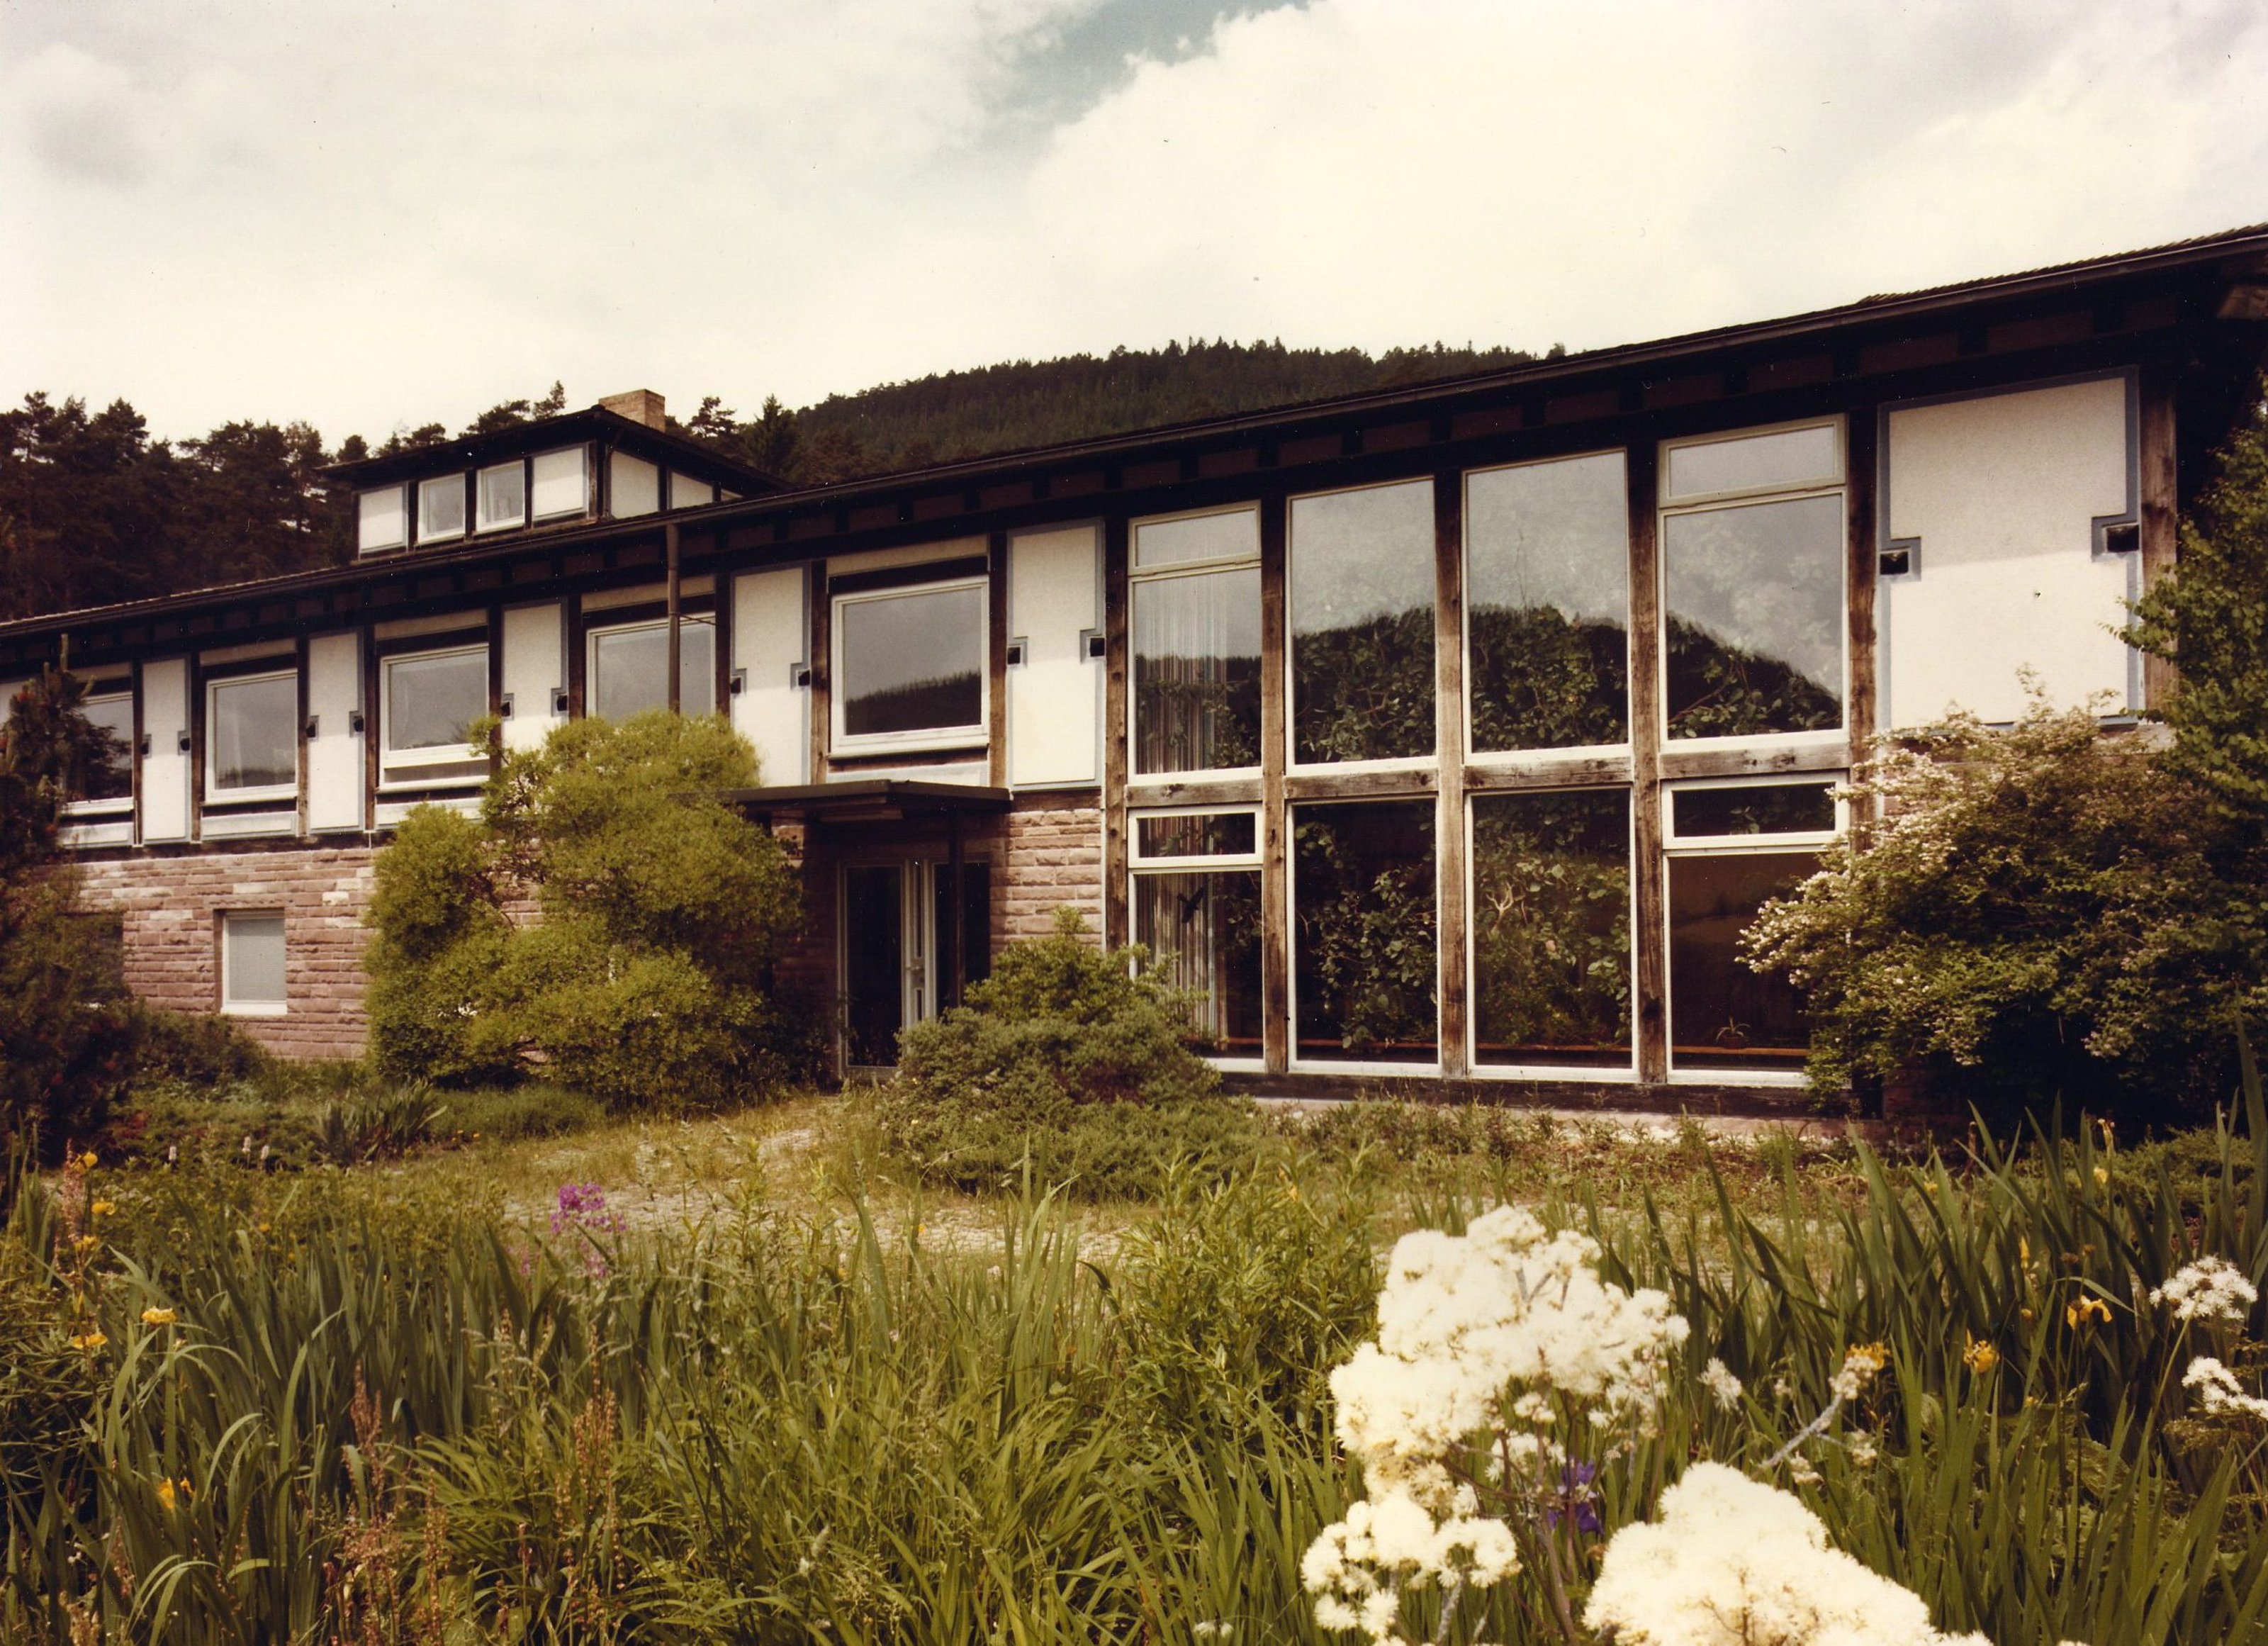 Max Himmelheber's villa among grass and flowers